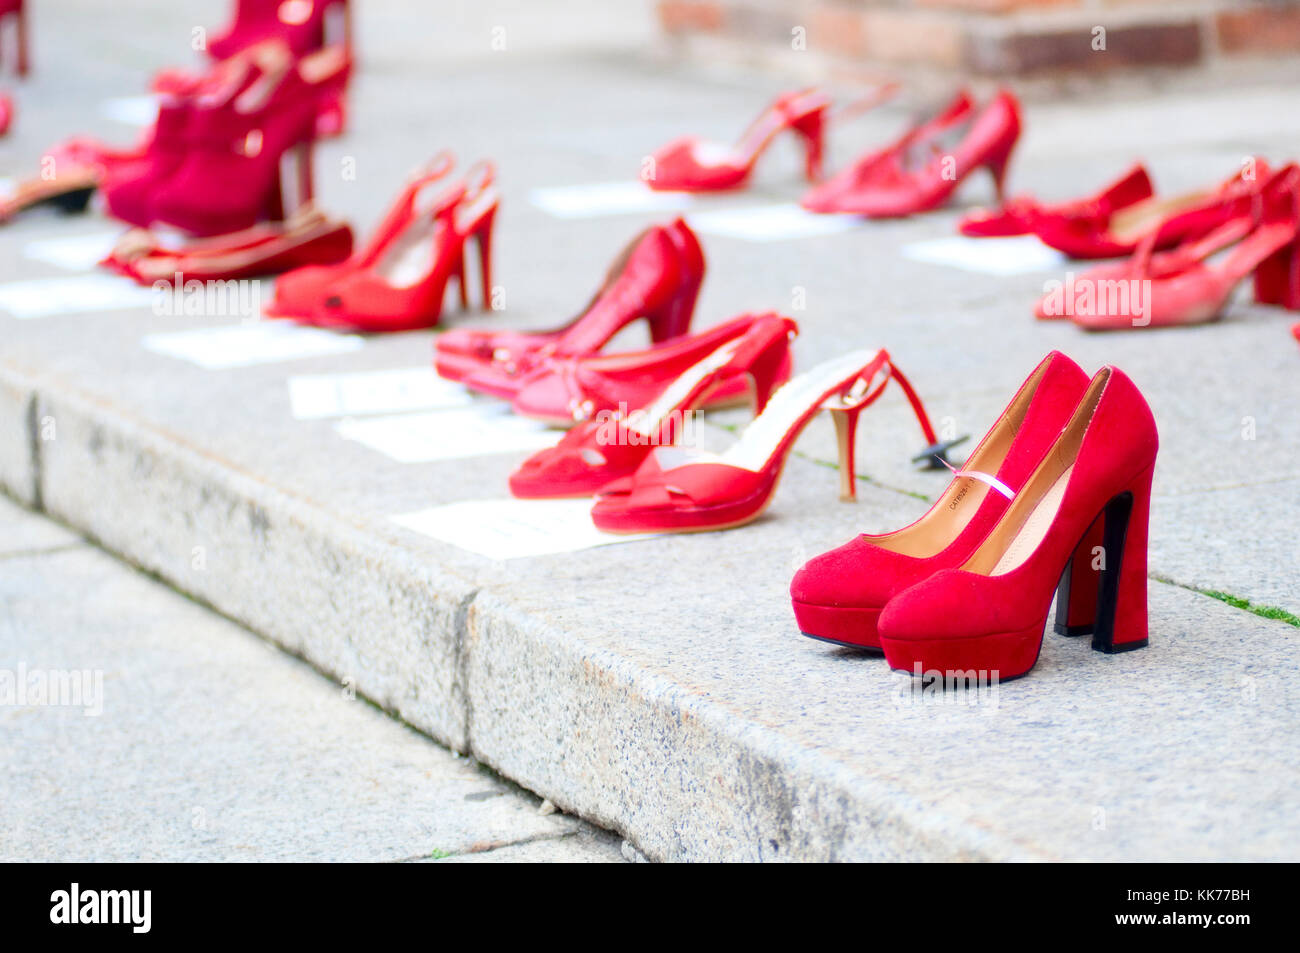 https://c8.alamy.com/compes/kk77bh/italia-lombardia-expuesto-zapatos-rojos-a-lo-largo-de-la-calle-simboliza-la-rebelion-contra-la-violencia-hacia-las-mujeres-kk77bh.jpg